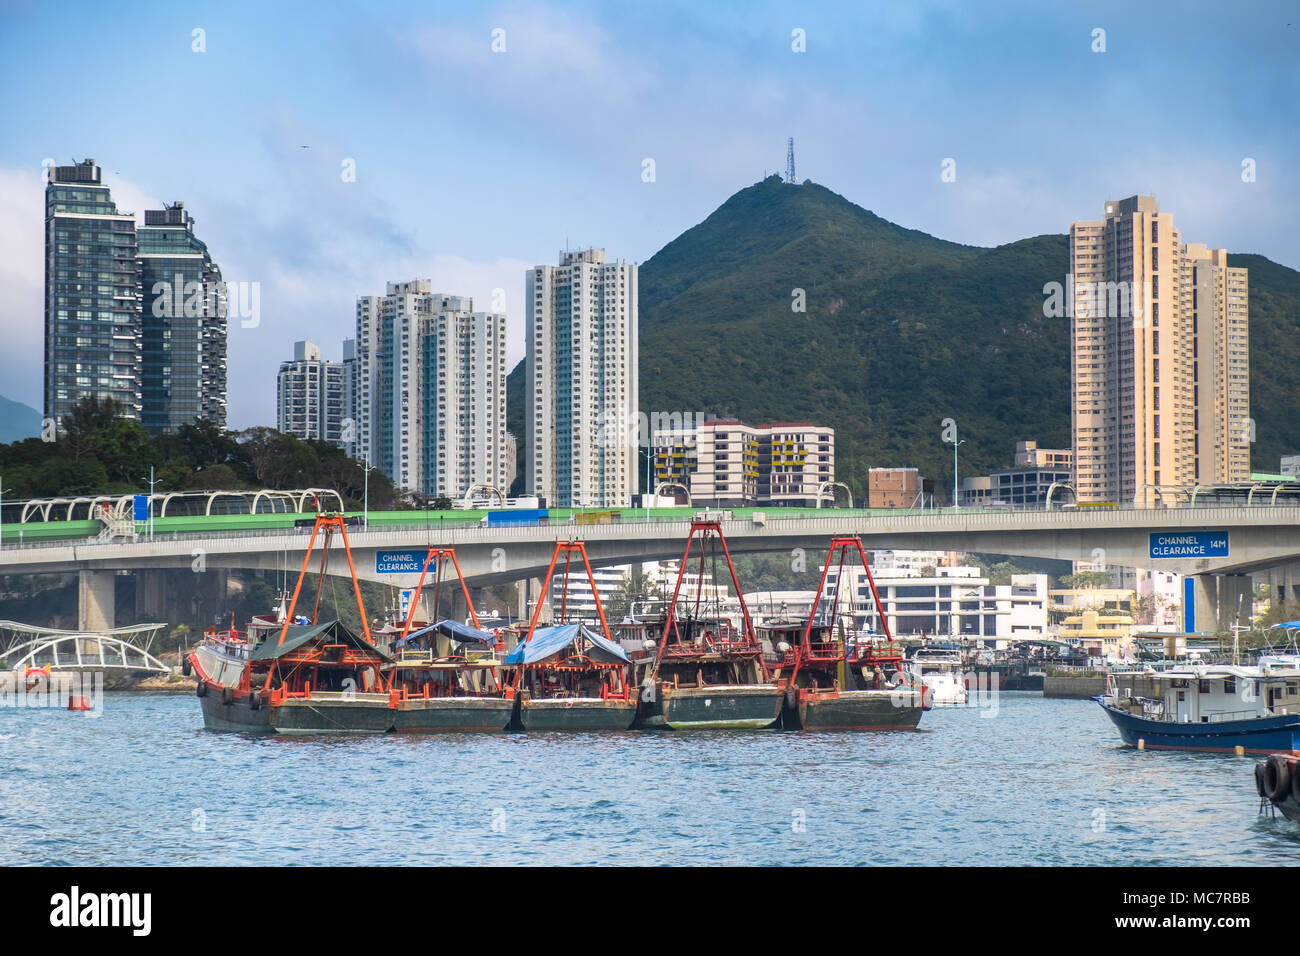 Les chalutiers de pêche de la Baie d'Aberdeen à Hong Kong. Pont de transport, des bâtiments, des gratte-ciel sur l'arrière-plan. La géométrie de la ville et de l'Asie du Sud est belle nature Banque D'Images